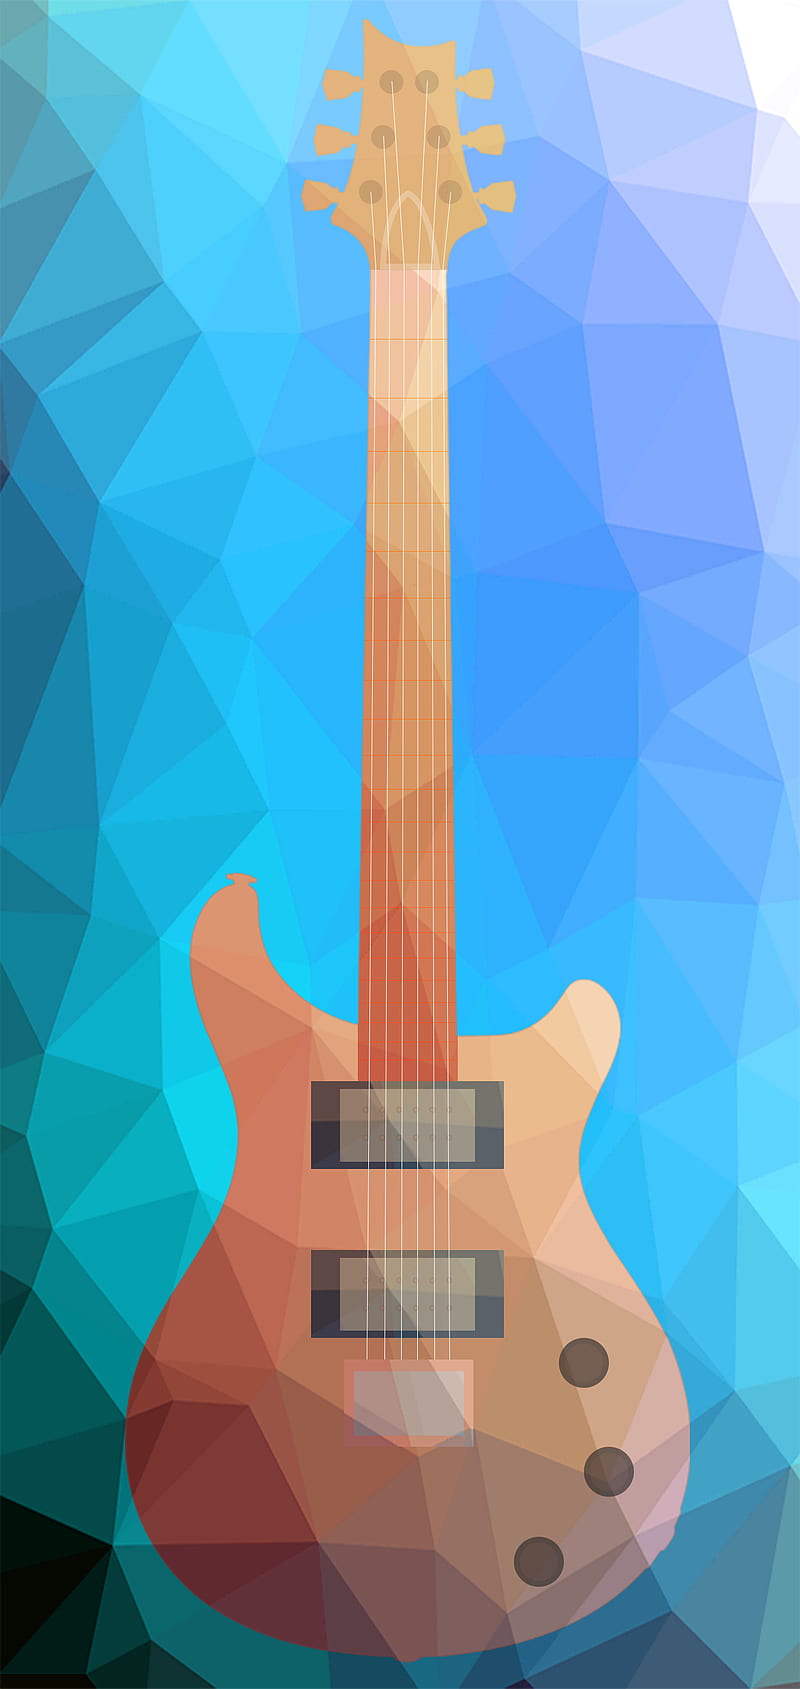 16x9 PRS desktop background pics  Official PRS Guitars Forum